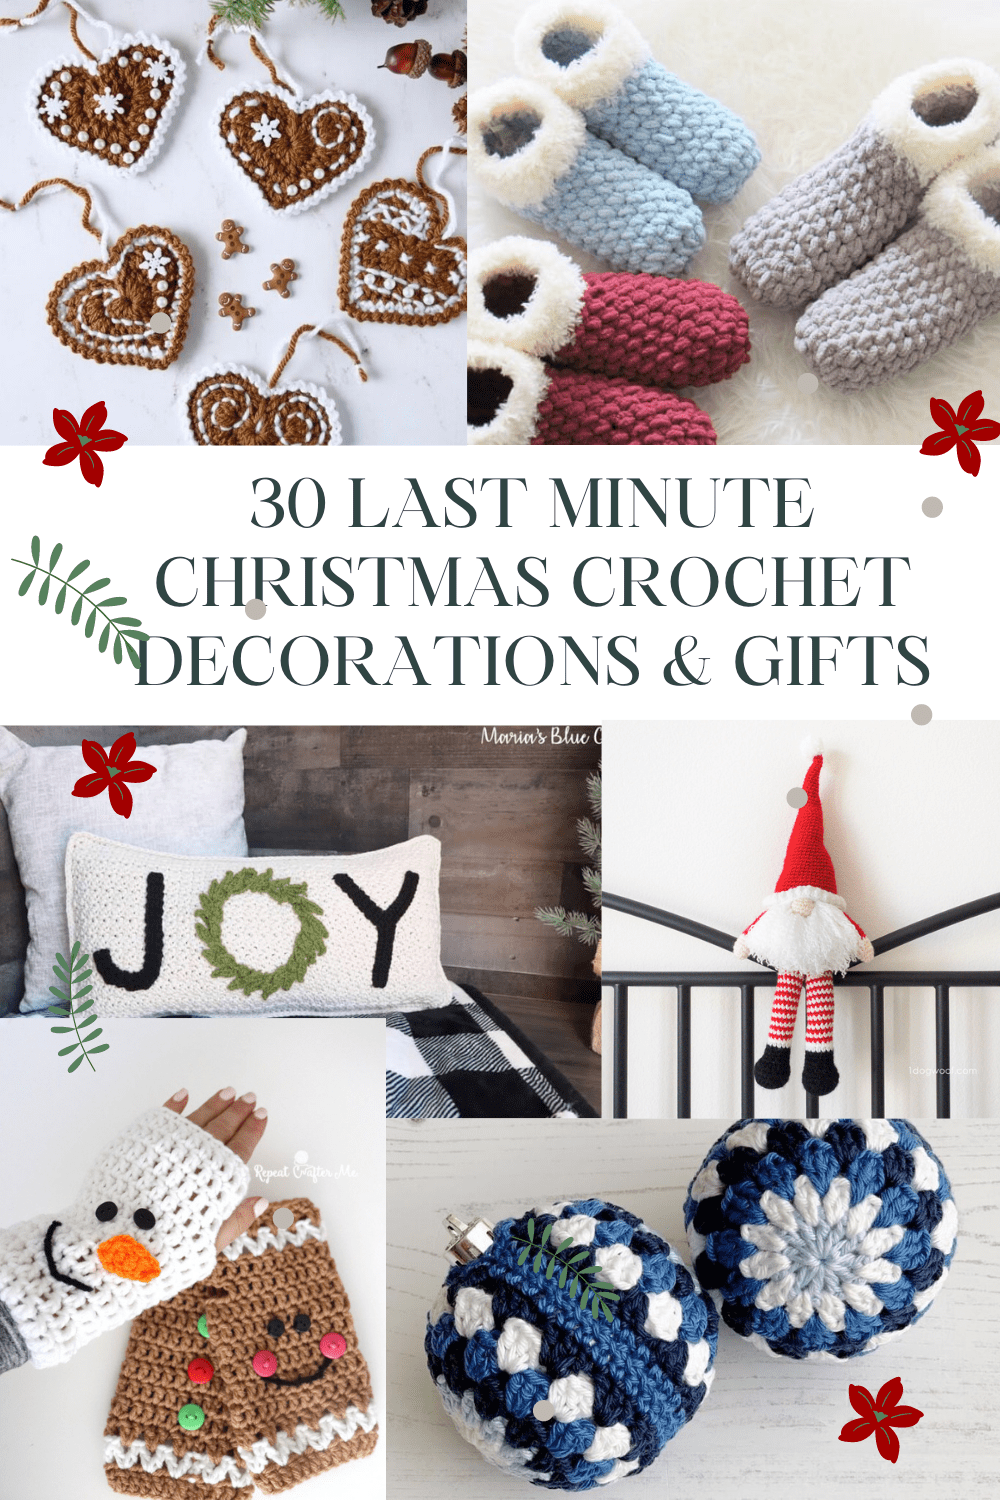 Christmas crochet ideas